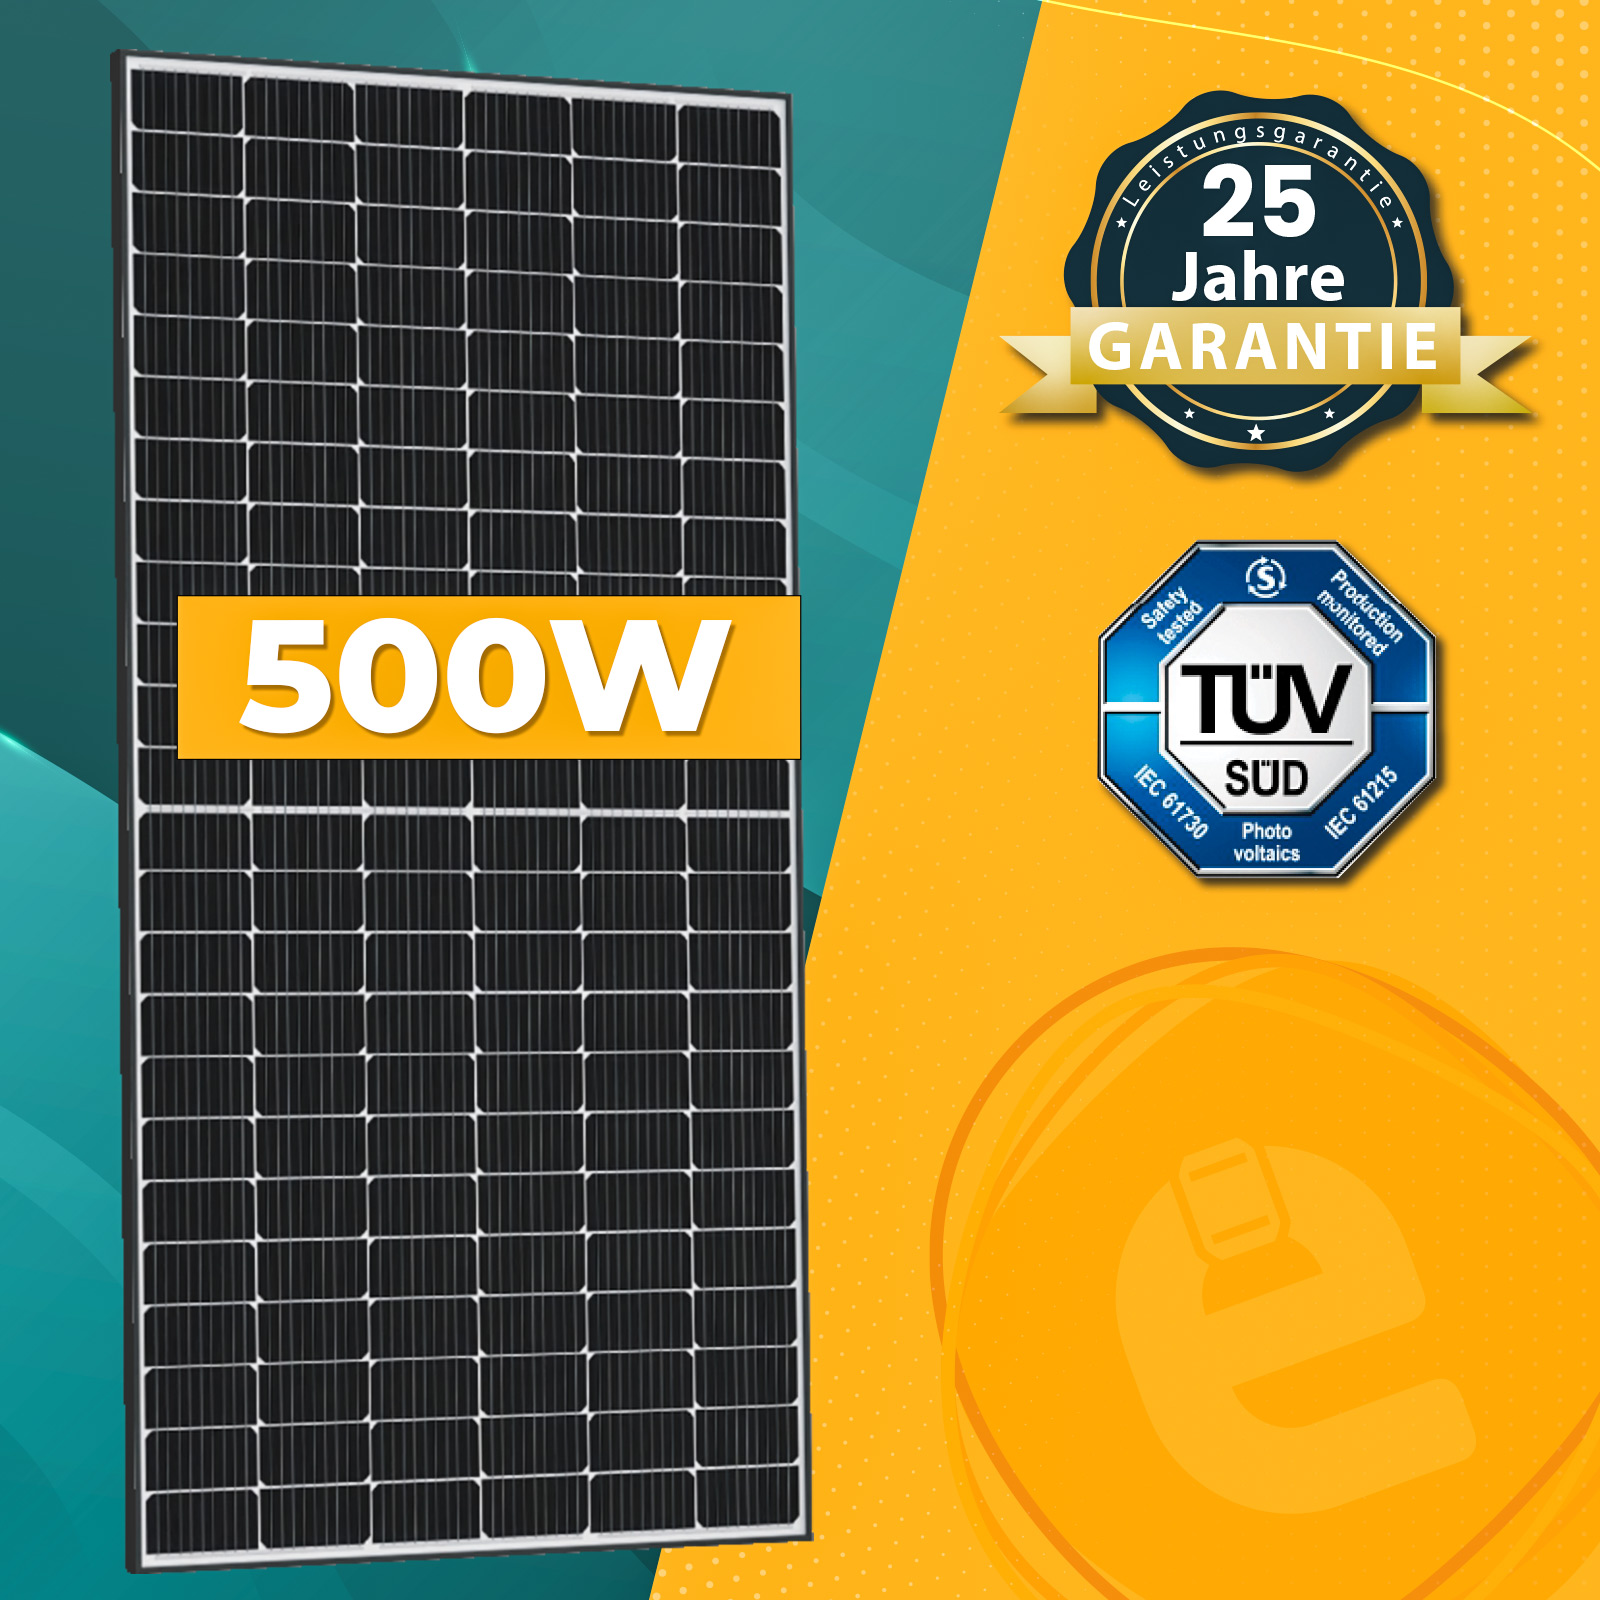 2000W Balkonkraftwerk Komplettset inkl. 500W Solarmodule, Hoymiles HMS -1800W-4T Wechselrichter, DTU-Wlite-S, Wielandstecker und PV-Montage - Enprove  Solar GmbH